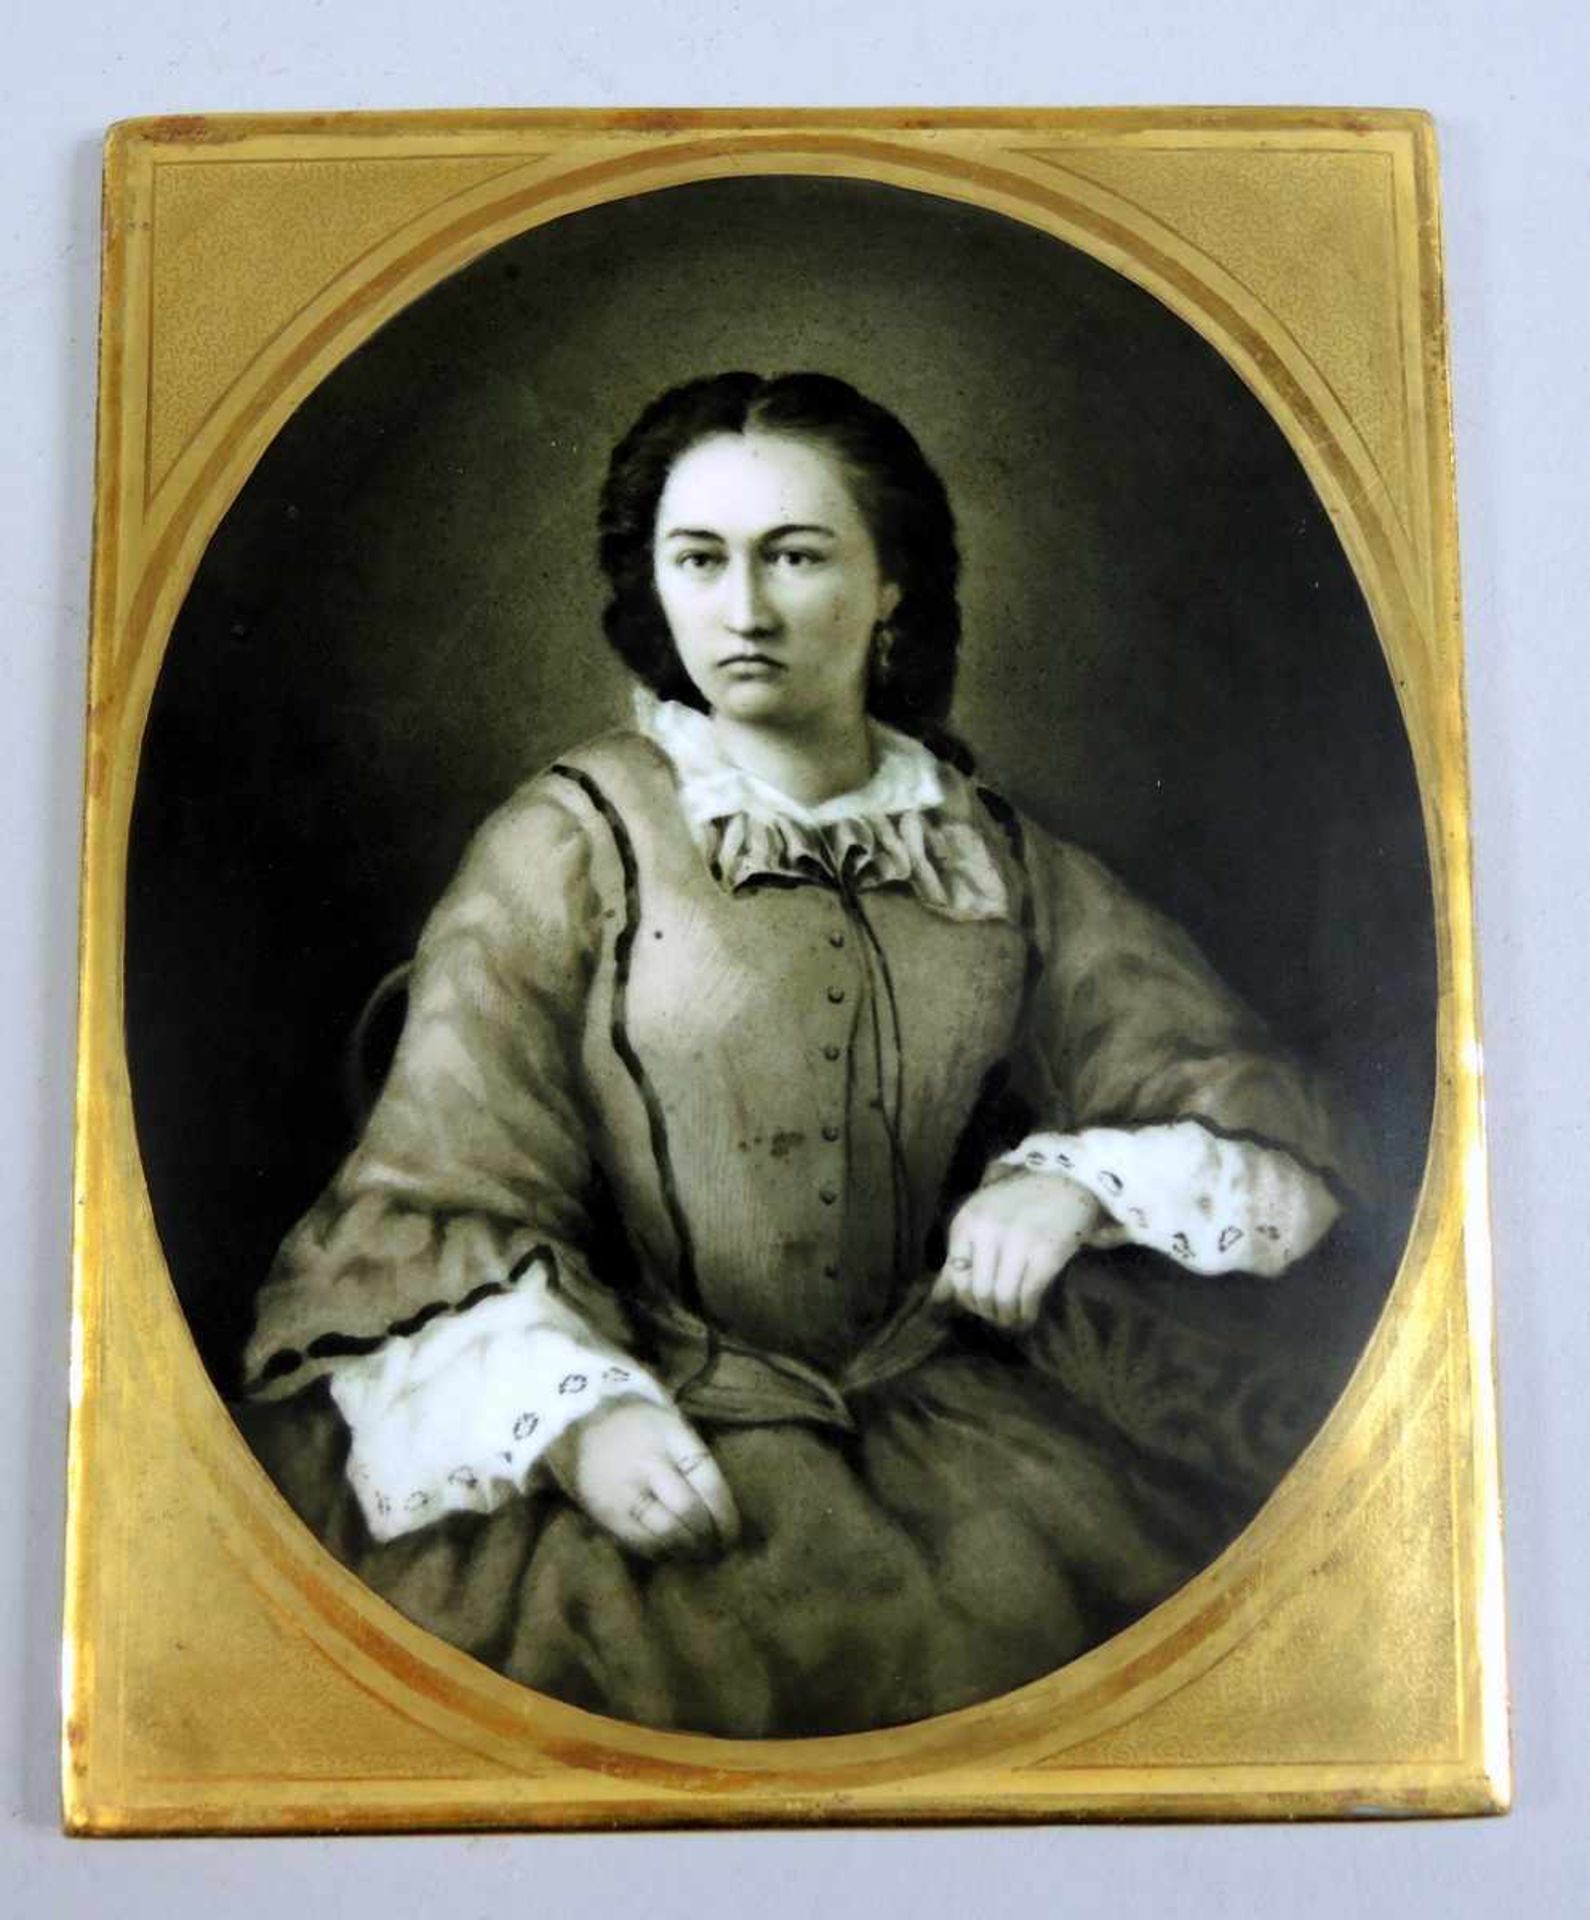 Nymphenburg Damenportrait in Grisaille Malerei Porzellan, gold staffiert. Nymphenburg. Um 1860/70. H